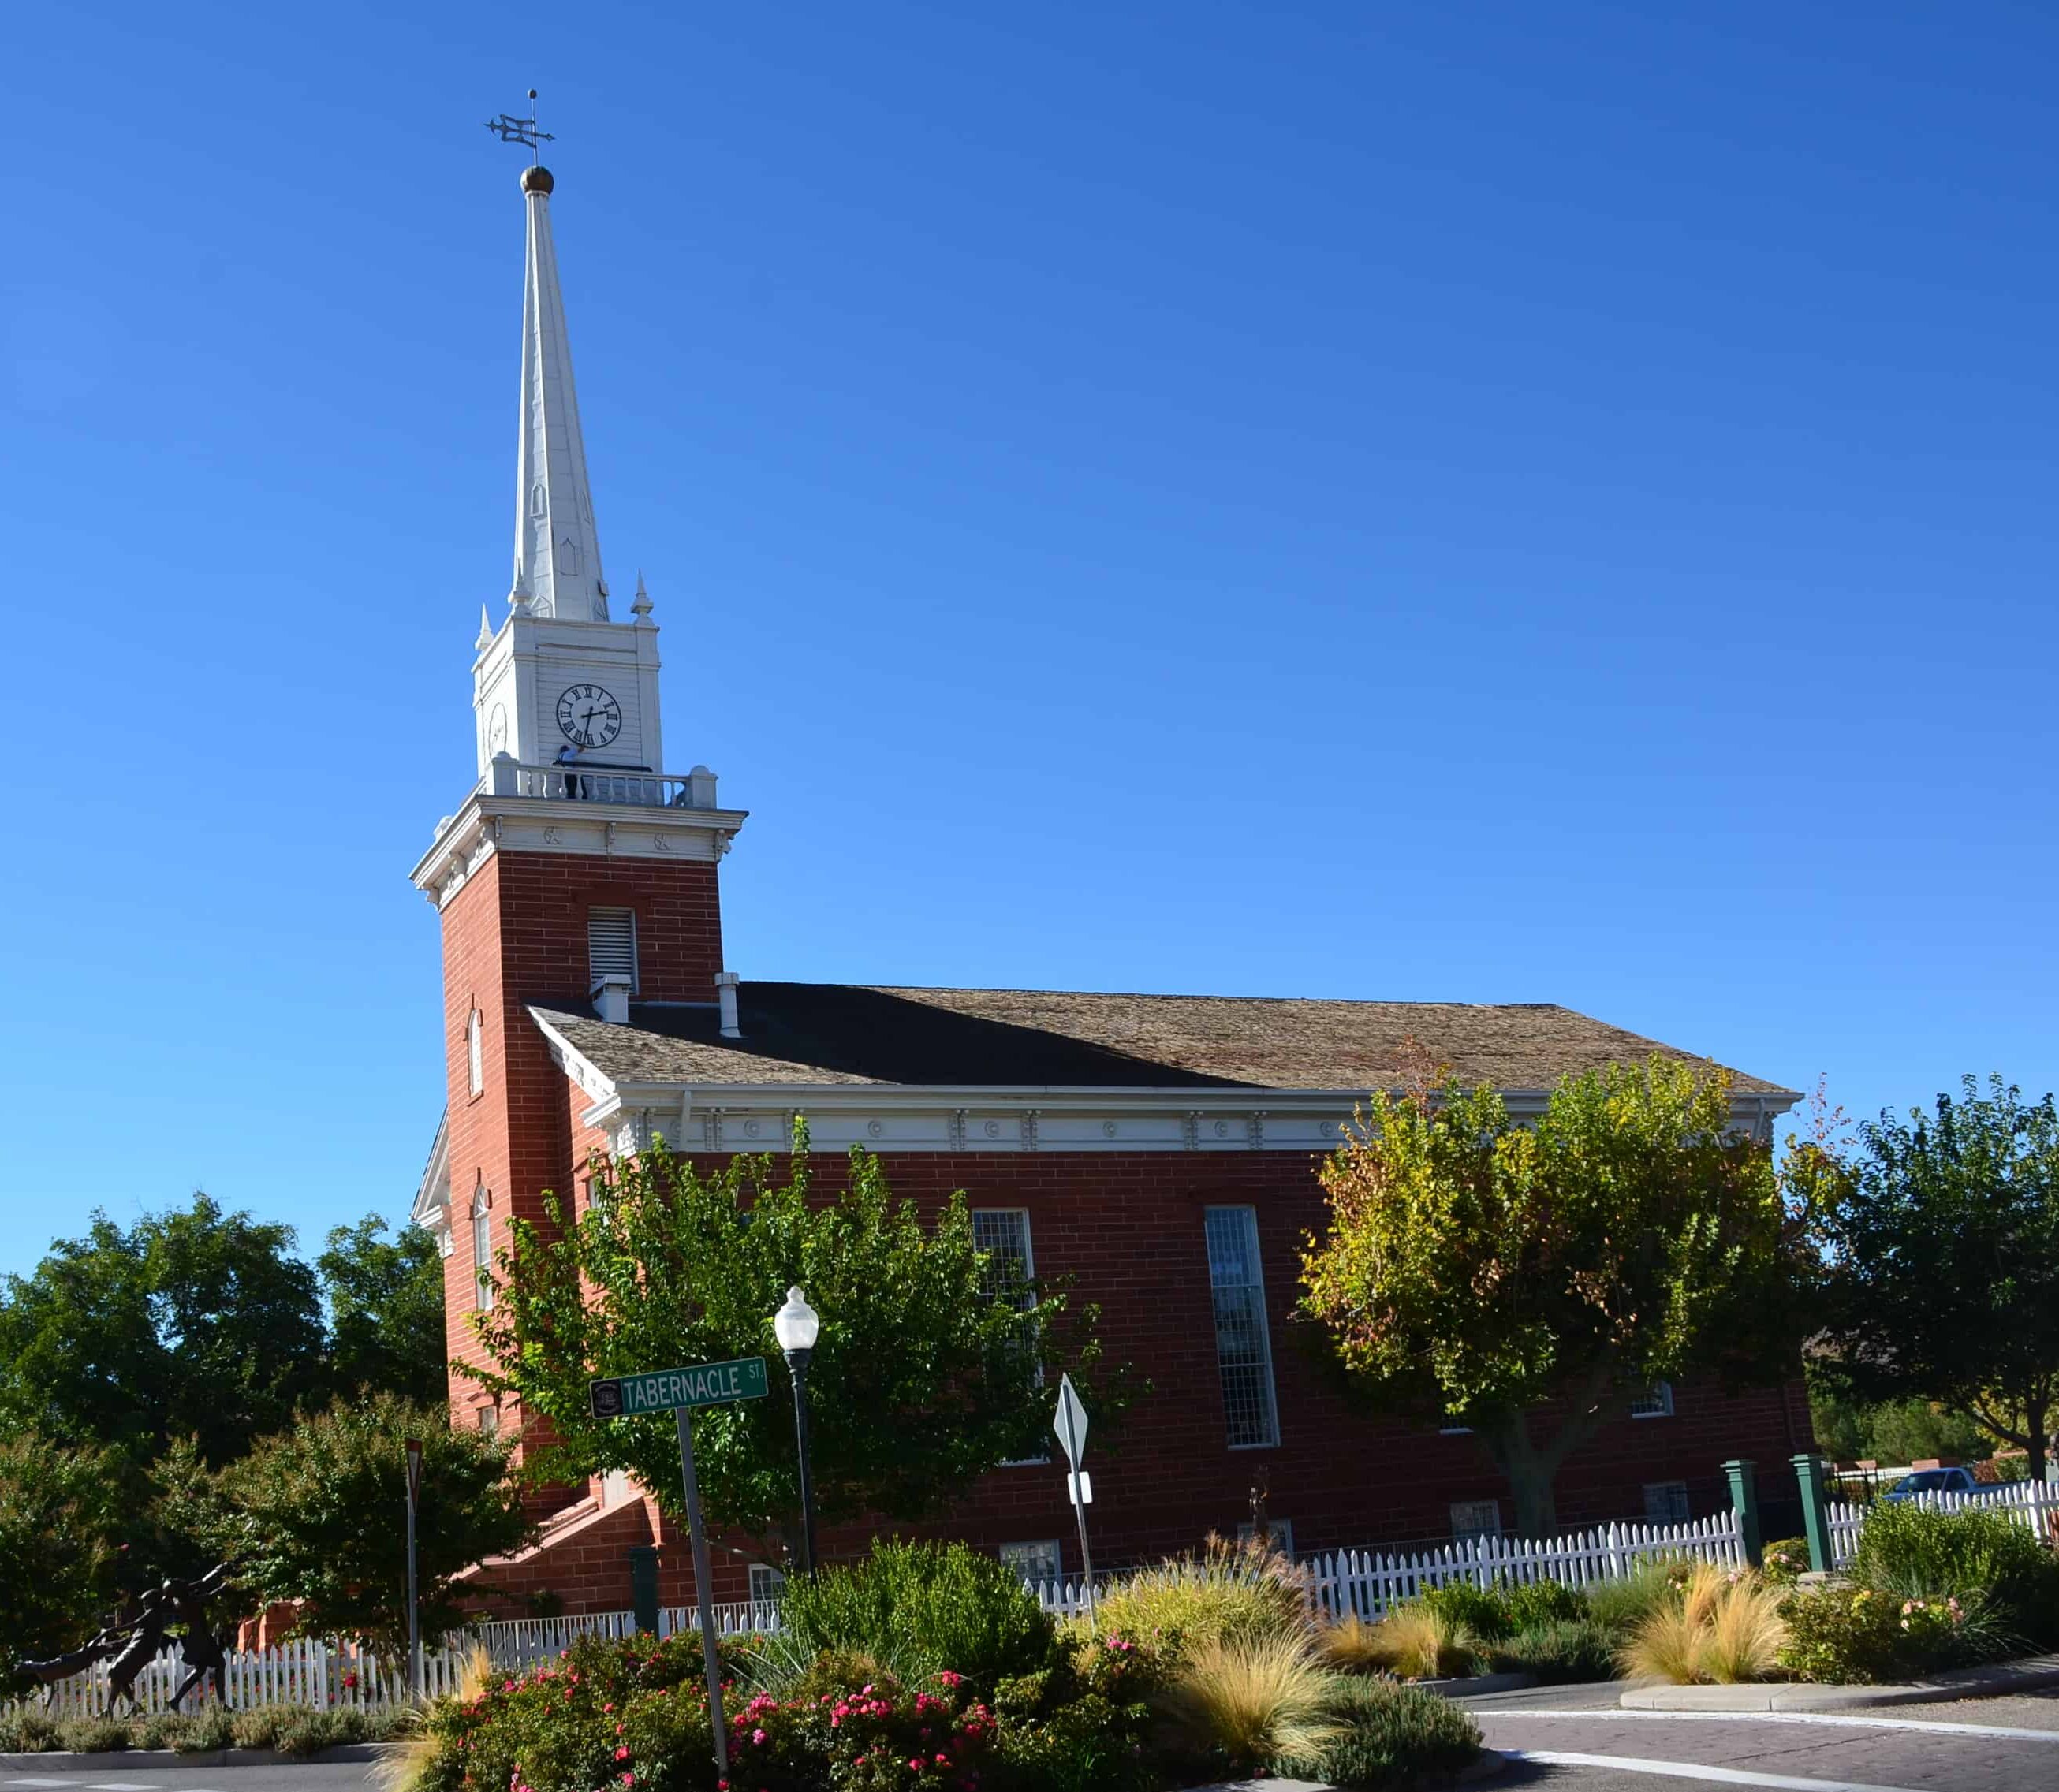 St. George Tabernacle in St. George, Utah